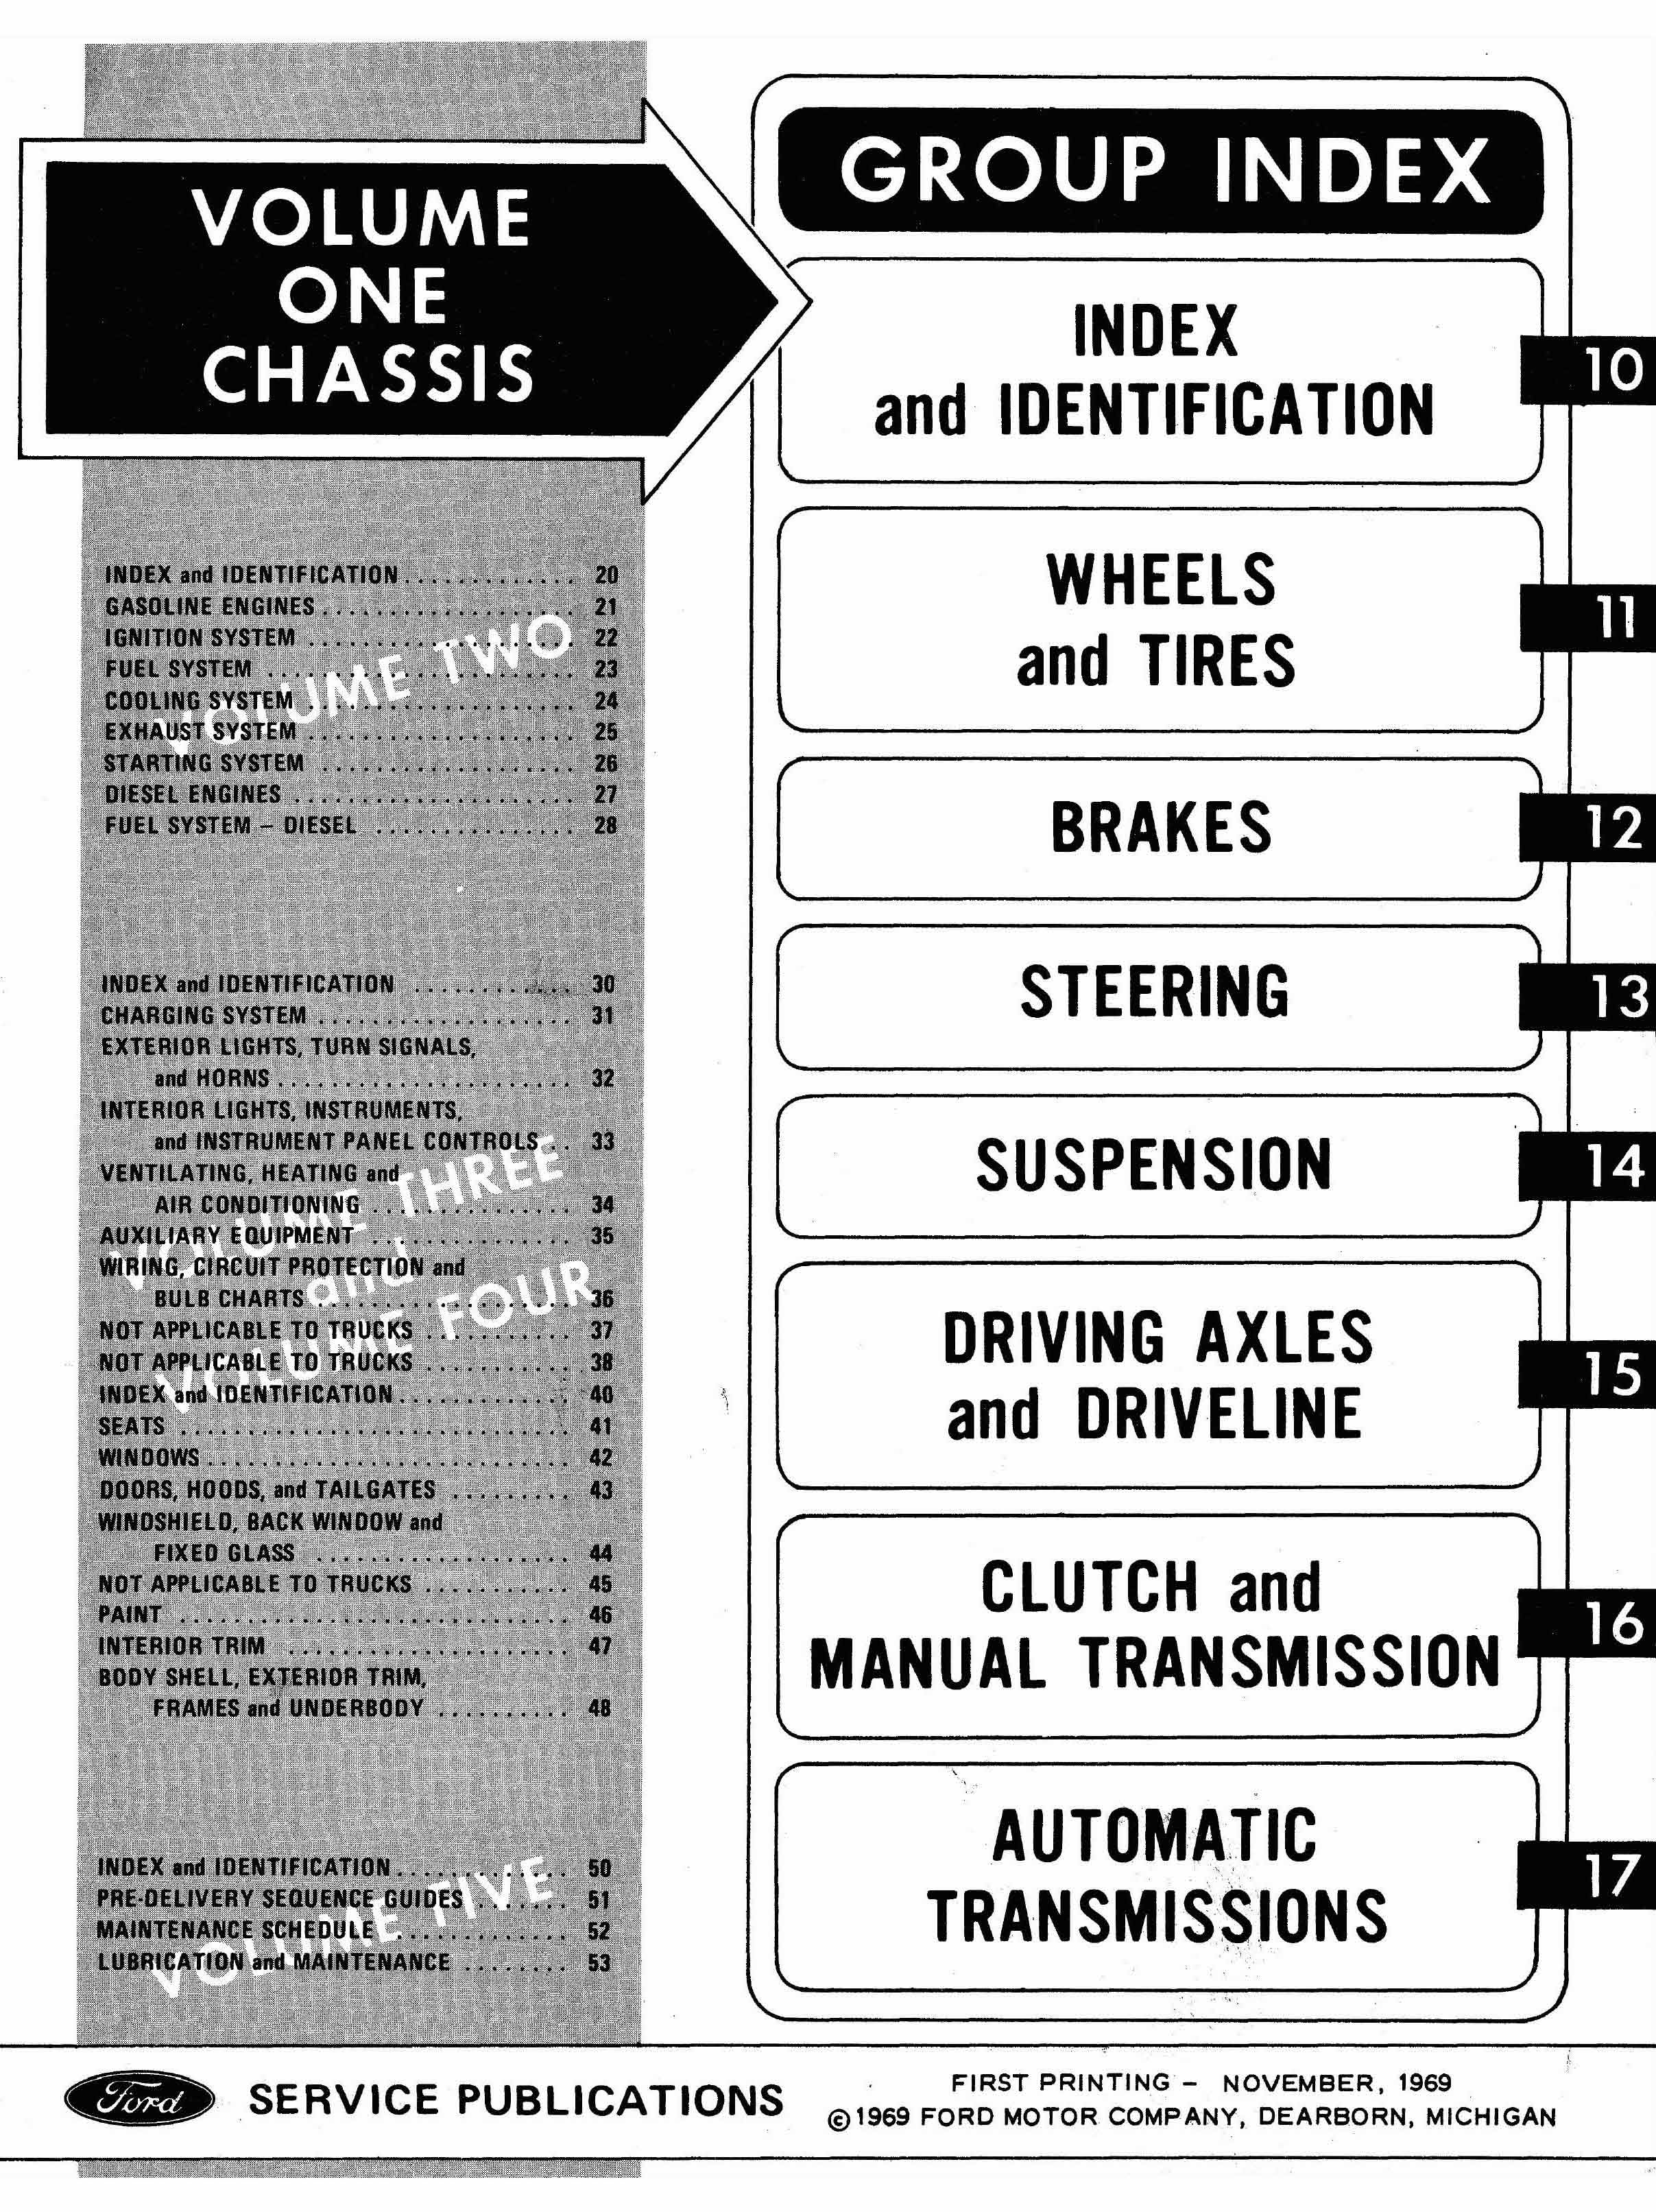 1970 Ford Truck Repair Manual